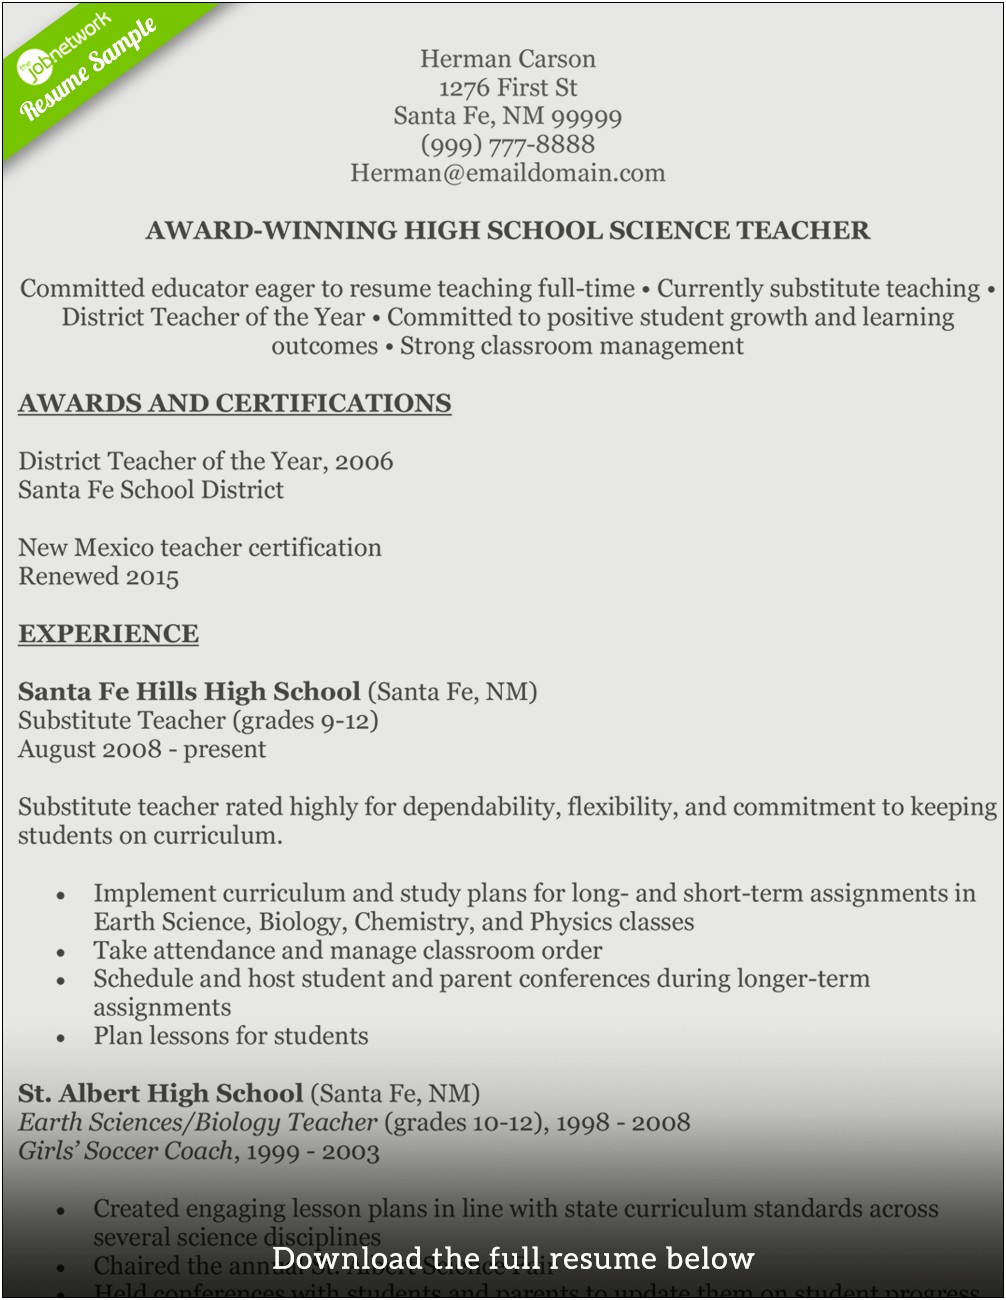 Sample Resume For Biology Teacher India